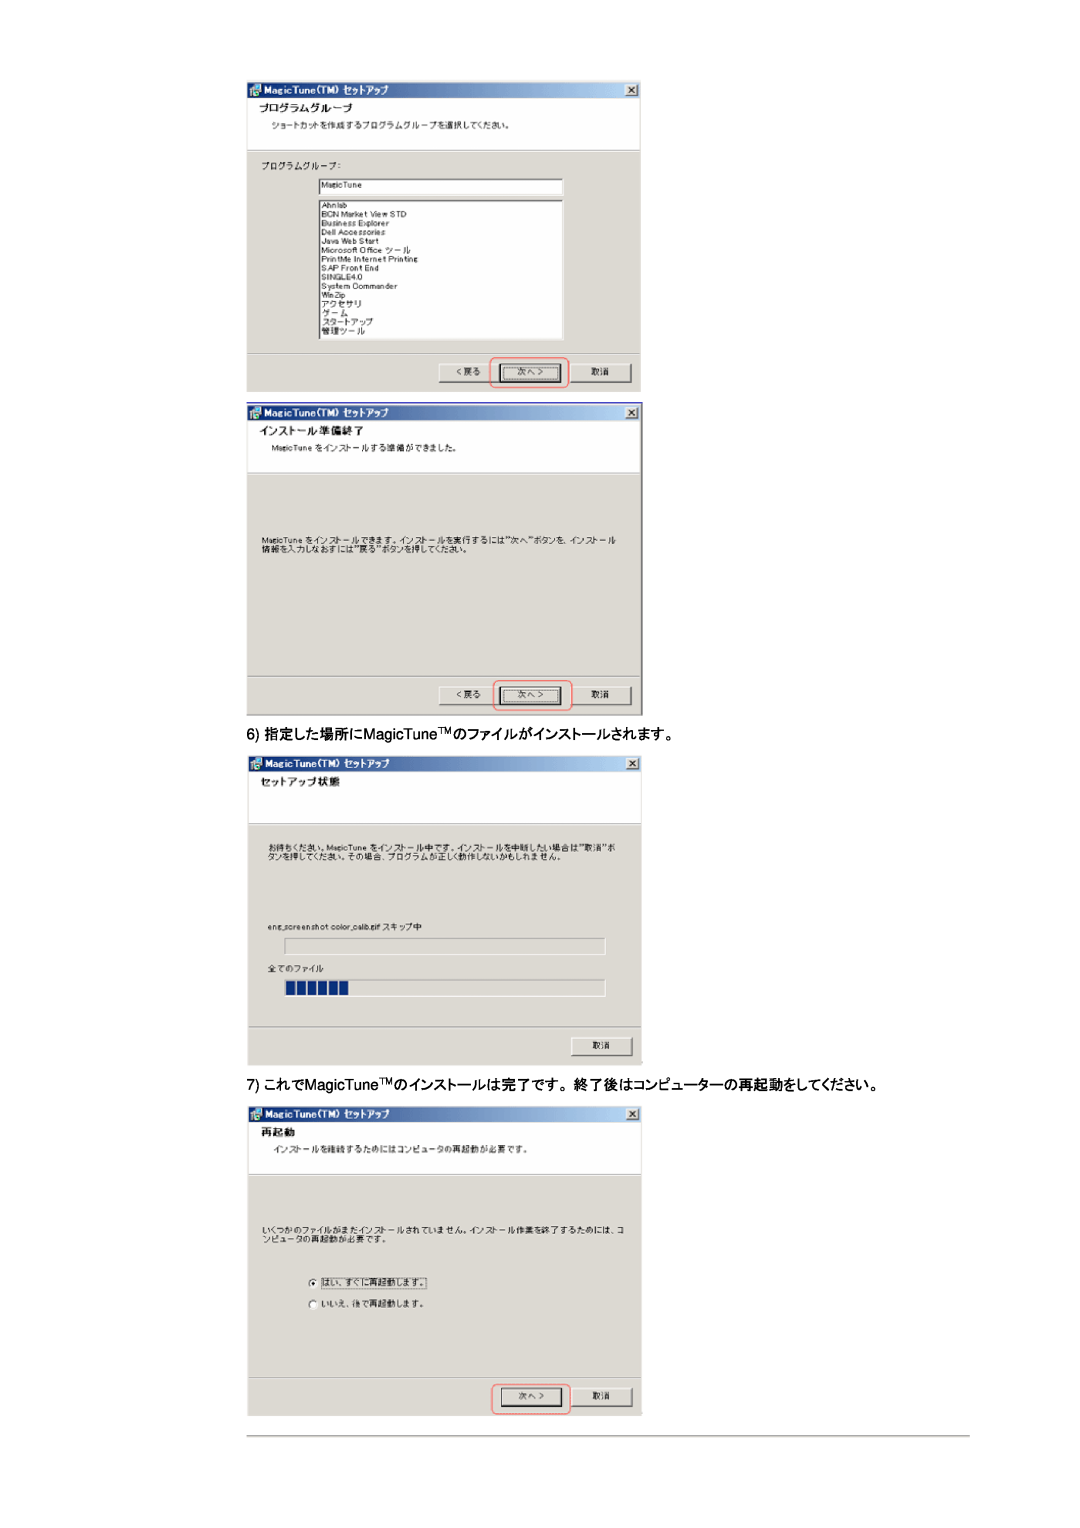 Samsung DI19PSQFV/XSJ manual 6 指定した場所にMagicTuneのファイルがインストールされます。, 7 これでMagicTuneのインストールは完了です。 終了後はコンピューターの再起動をしてください。 